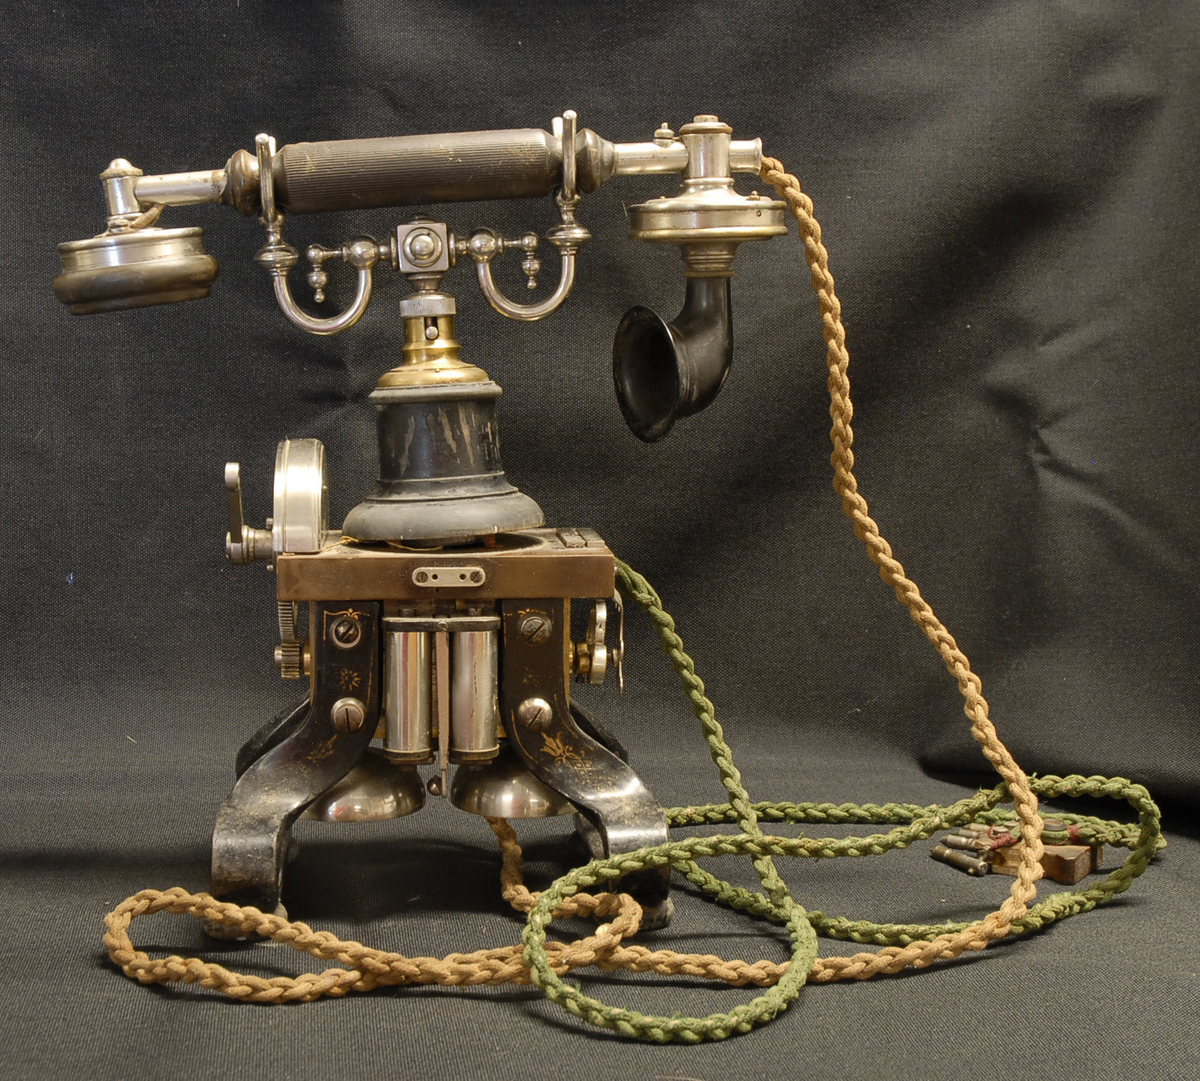 Telefon benyttet i damsystemet i Grøna-vassdraget.